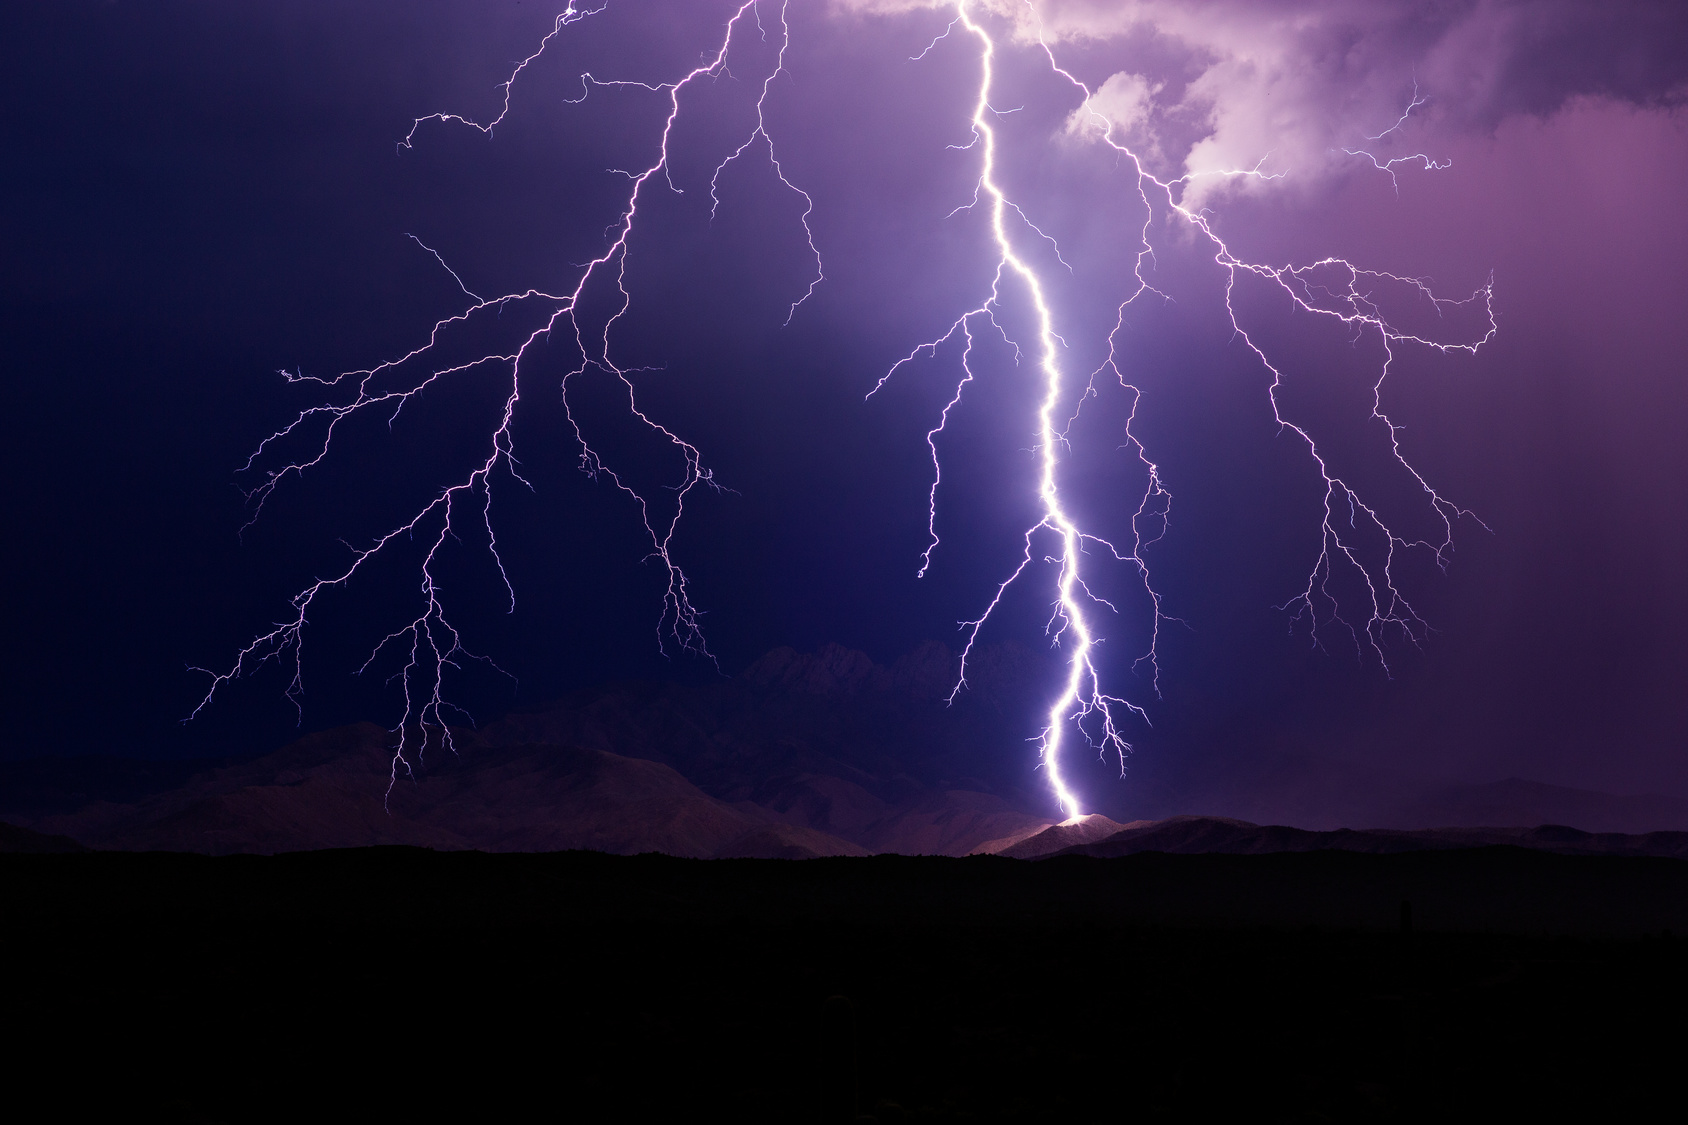 Grâce aux muons, une tension exceptionnelle a pu être mesurée dans un orage. © mdesigner125, fotolia